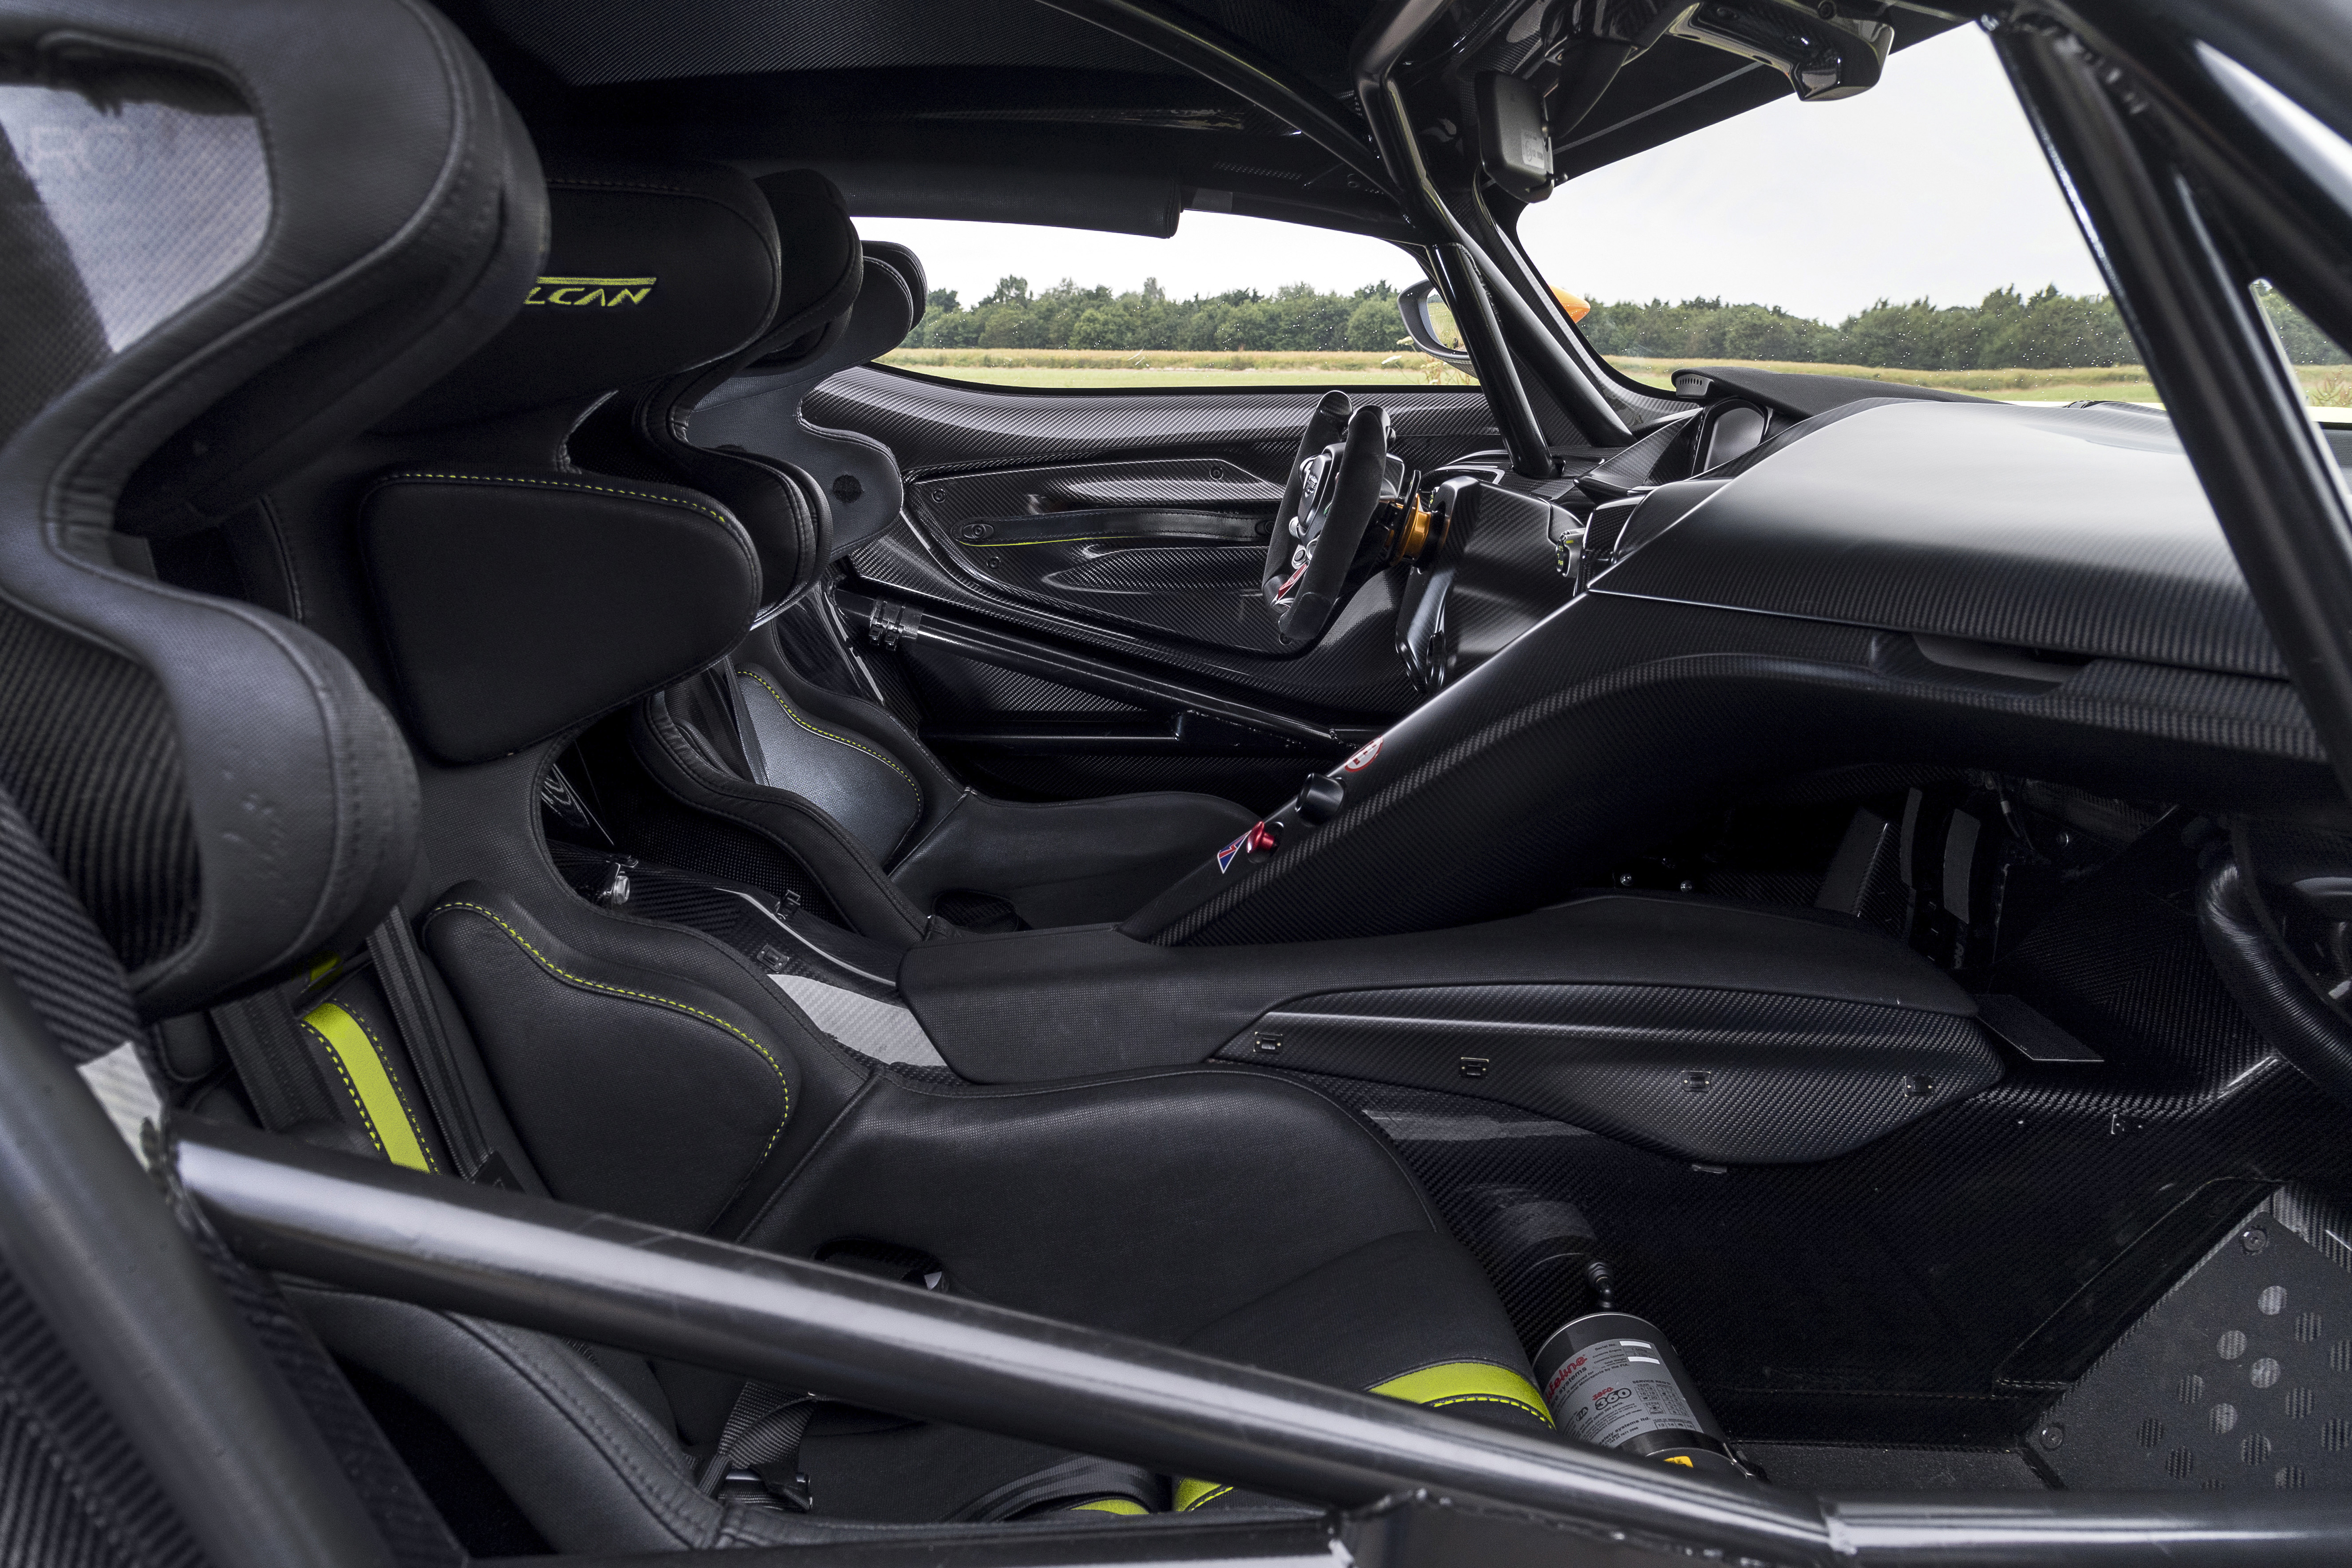 Descarga gratuita de fondo de pantalla para móvil de Interior, Aston Martin, Vehículos, Aston Martin Vulcano, Aston Martin Vulcan Amr Pro.